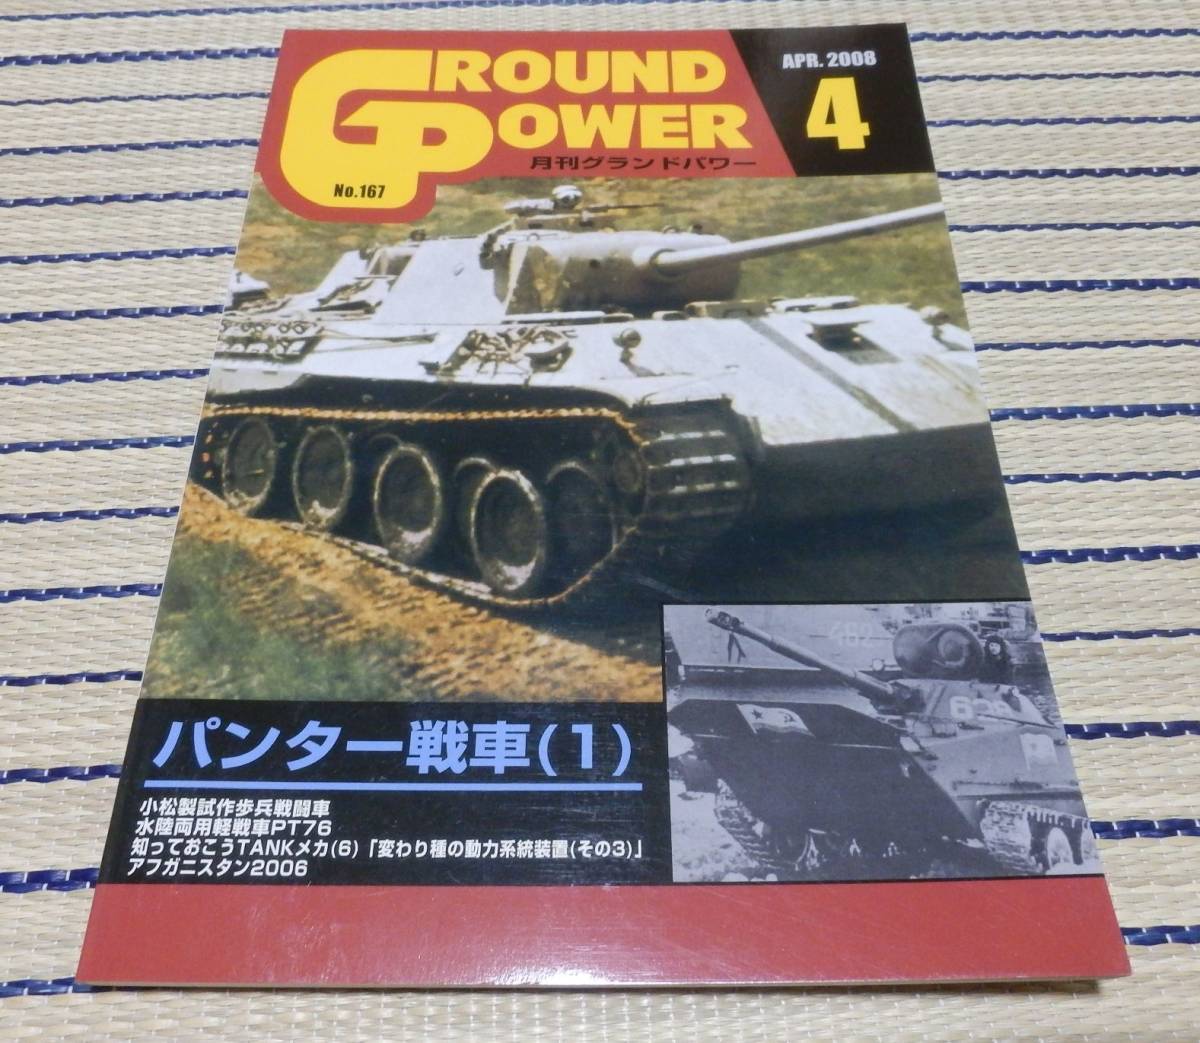 ガリレオ出版 月刊グランドパワー Ground power No.167 2008年4月号 パンター戦車(1) ネコポスゆうパケOK_画像1